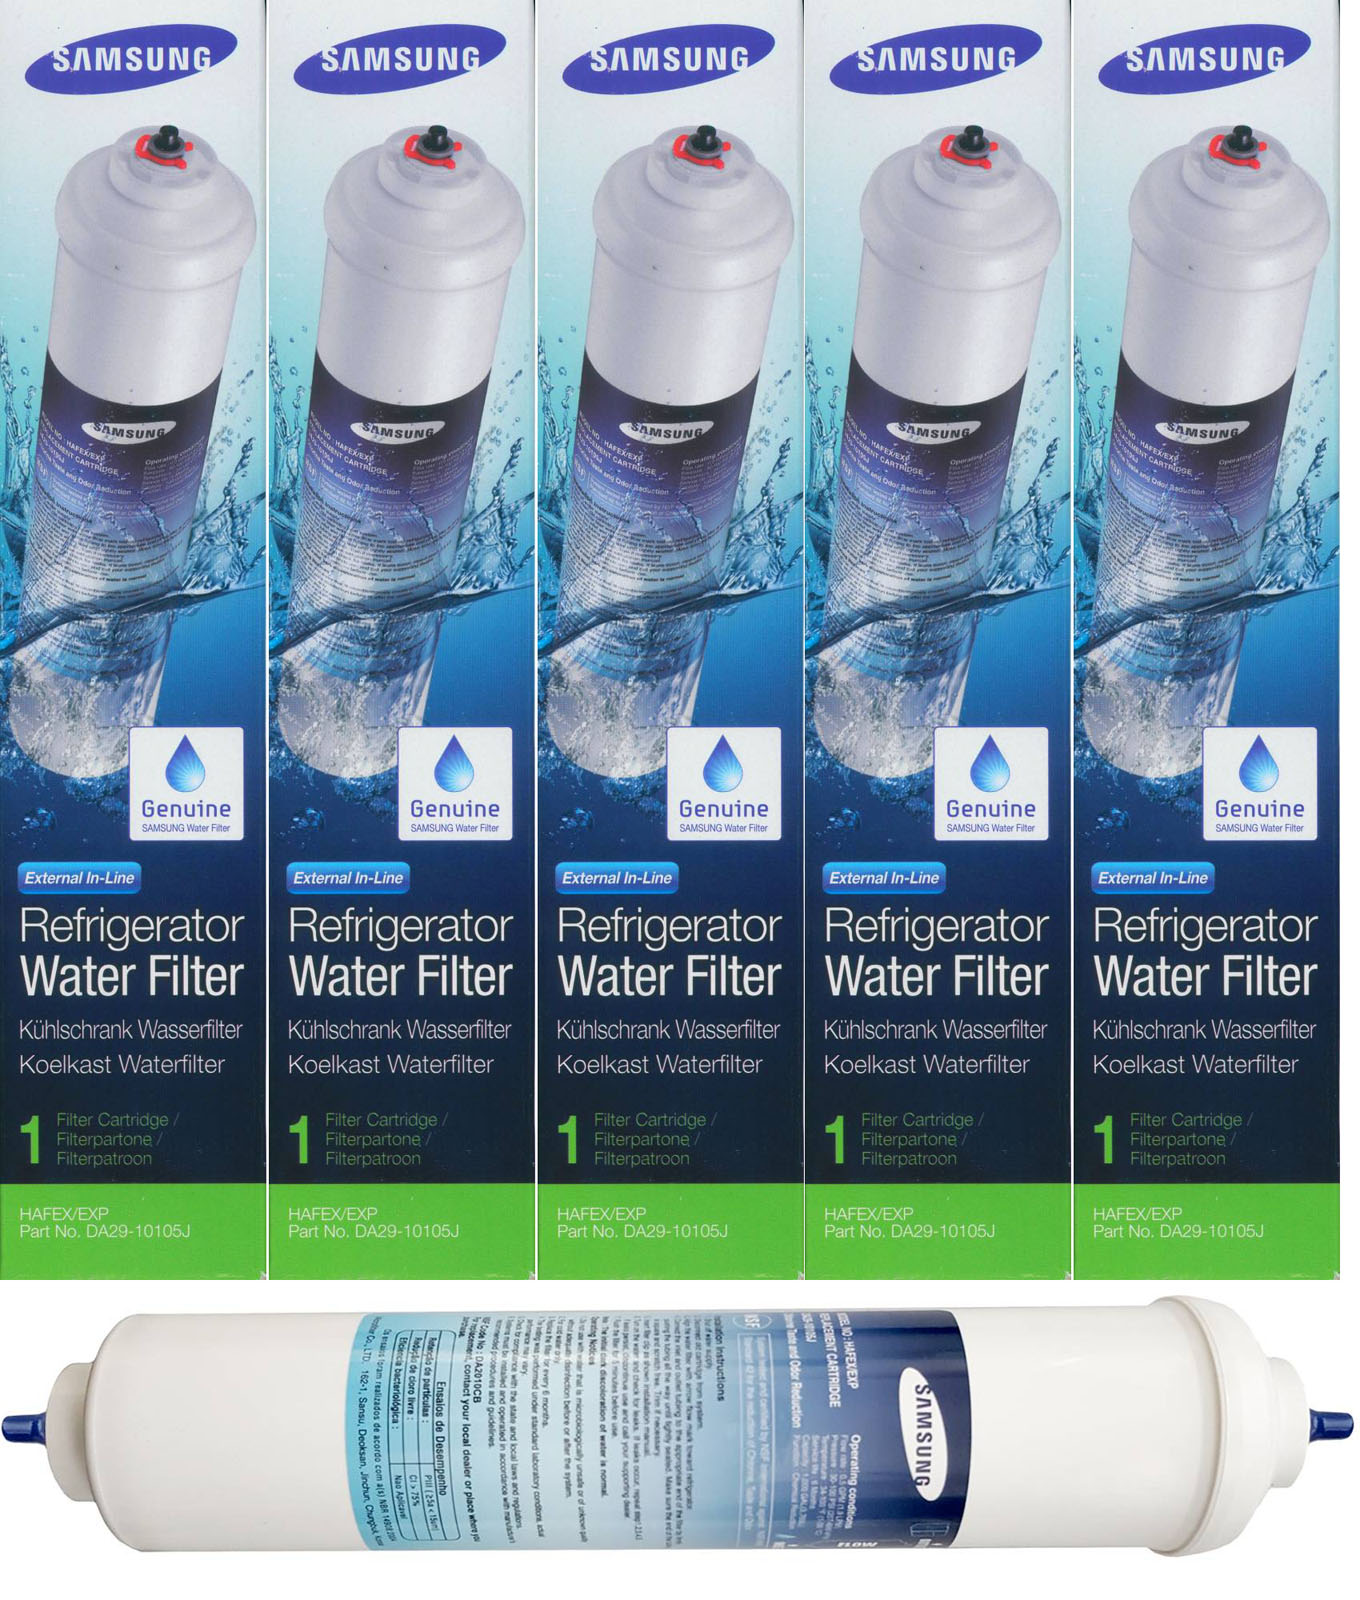 5x Original Samsung Wasserfilter DA29-10105J Filter HAFEX/EXP 3785 Liter